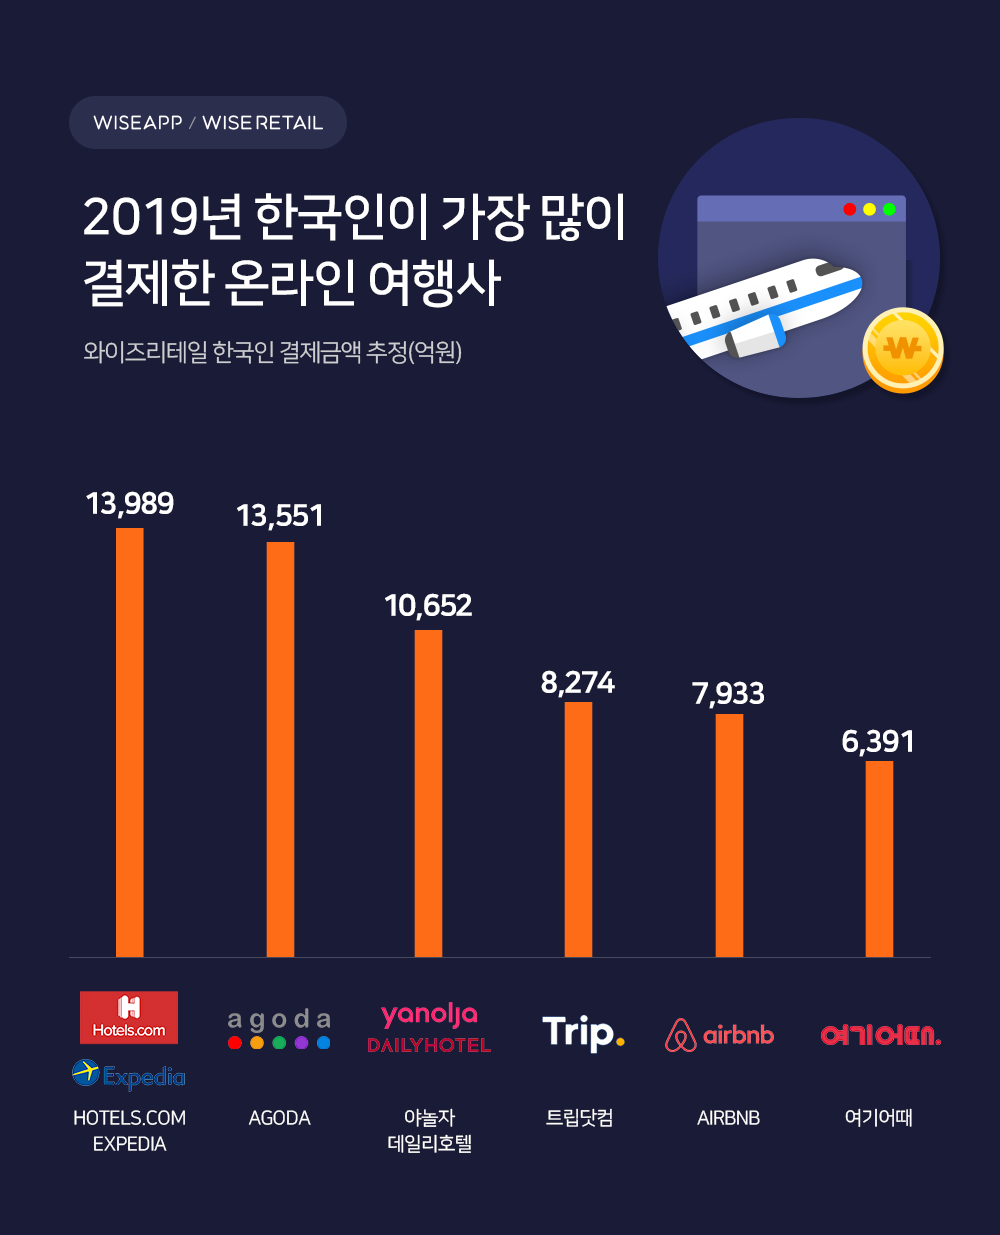 뉴스 플러스] 한국인이 가장 많이 결제하는 온라인 여행사 순위 살펴보니... : 네이버 포스트